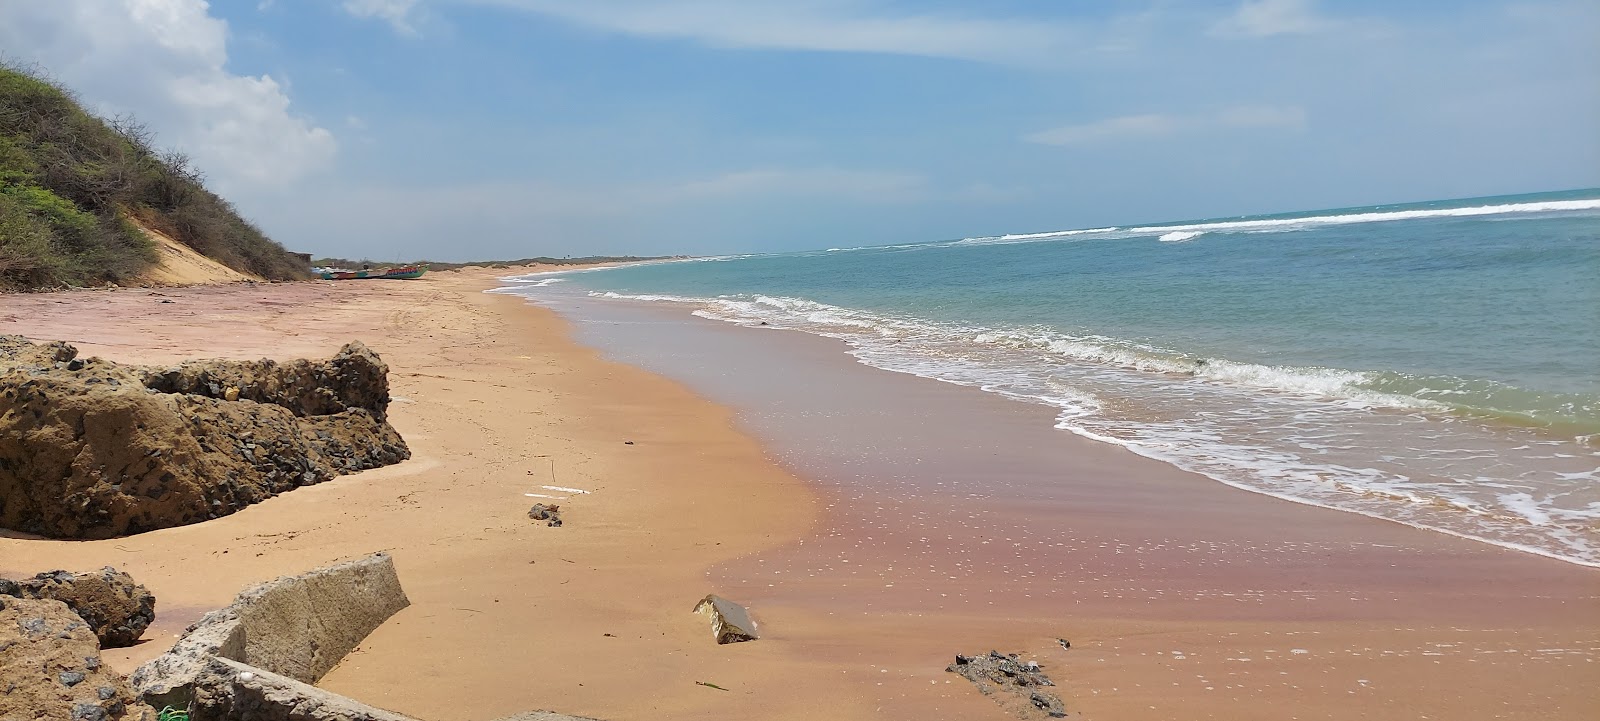 Kooduthalai beach'in fotoğrafı geniş plaj ile birlikte